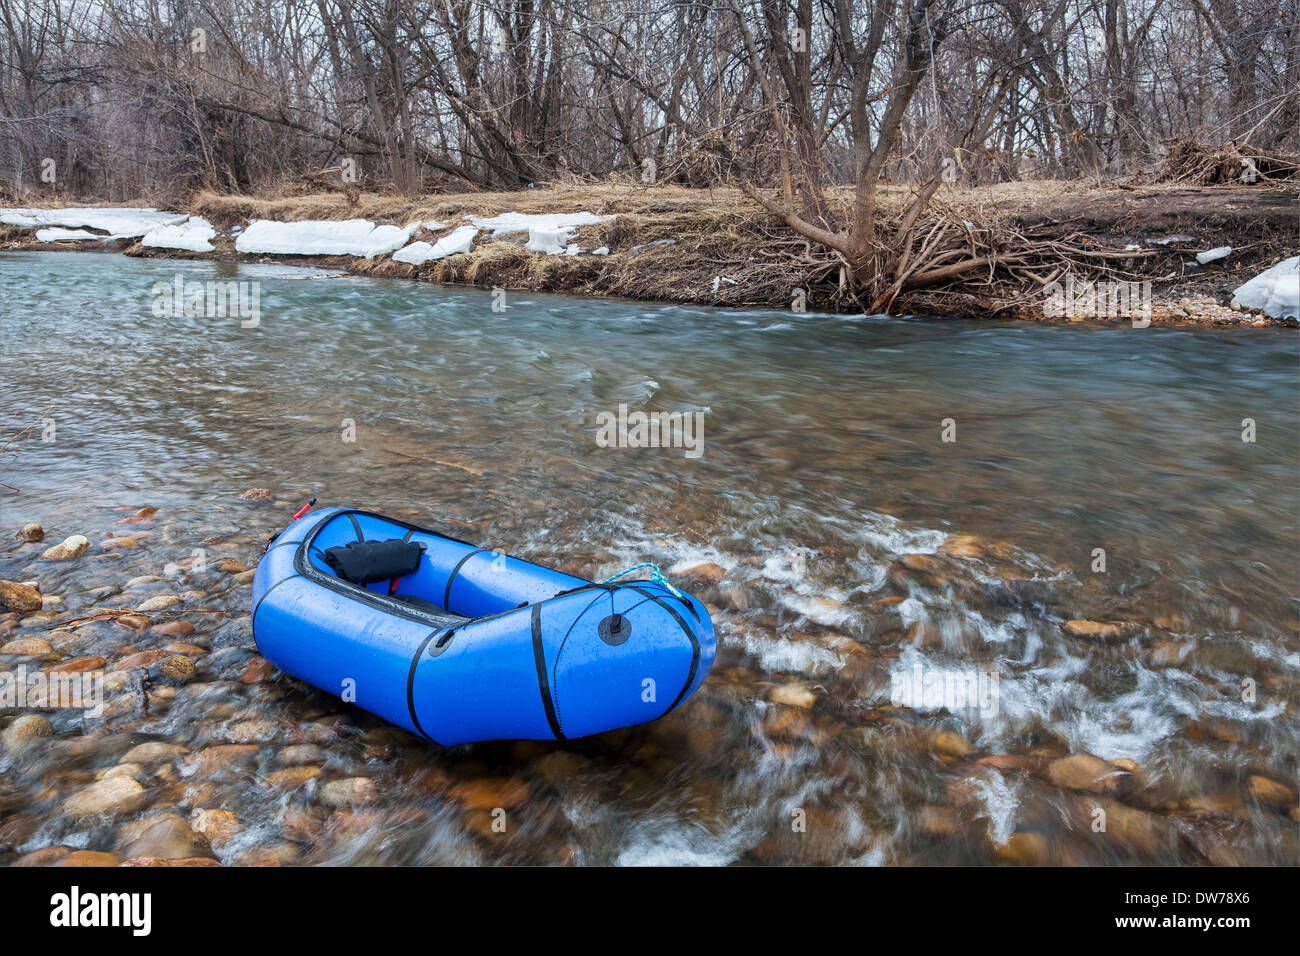 Un pacraft (un radeau léger utilisé pour la personne ou de l'expédition adventure racing) sur une rivière peu profonde Banque D'Images